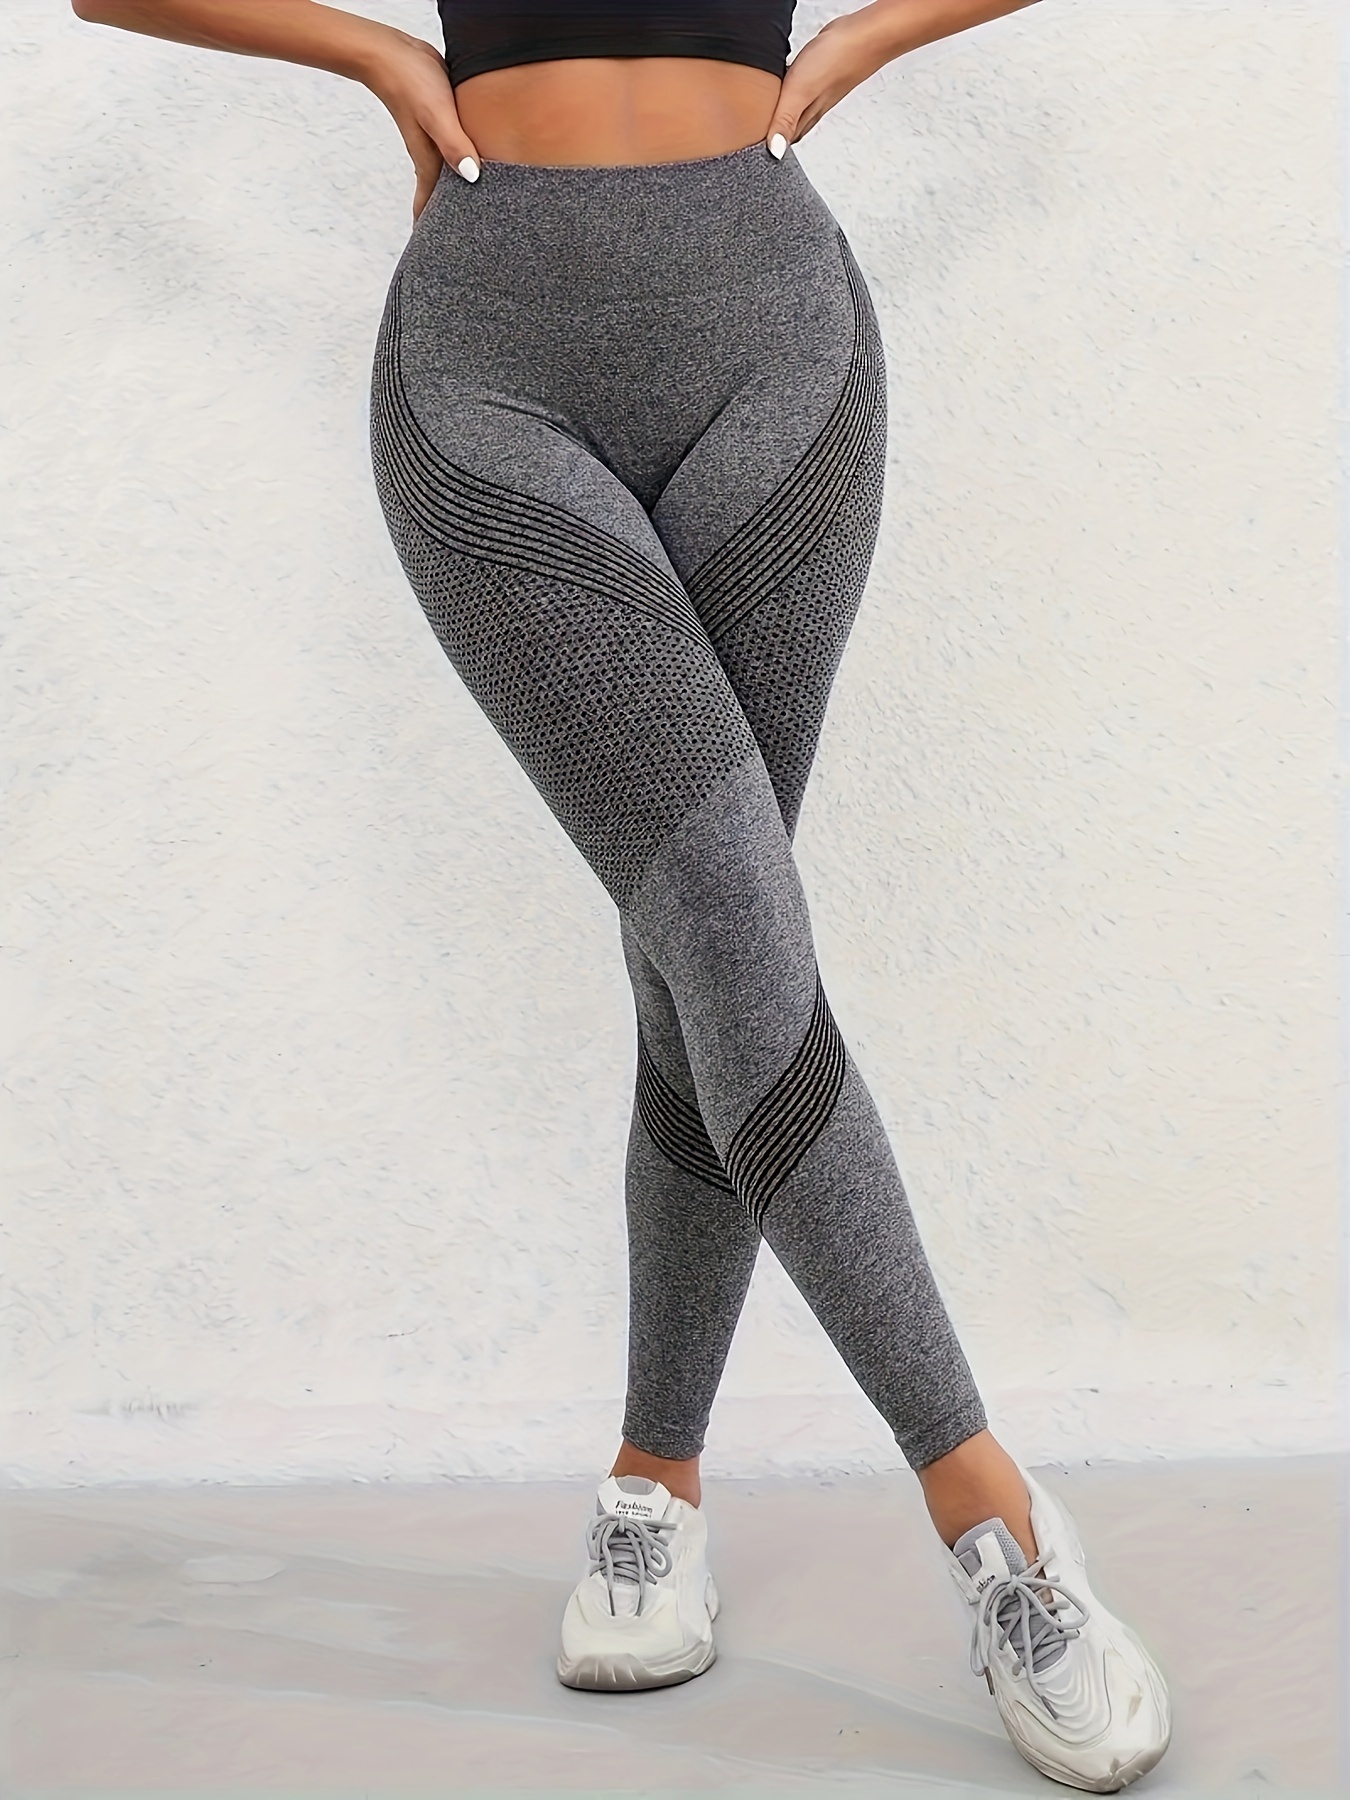 Legging Pants, Women's Fitness Academy Butt Lift High Waist Knitwear